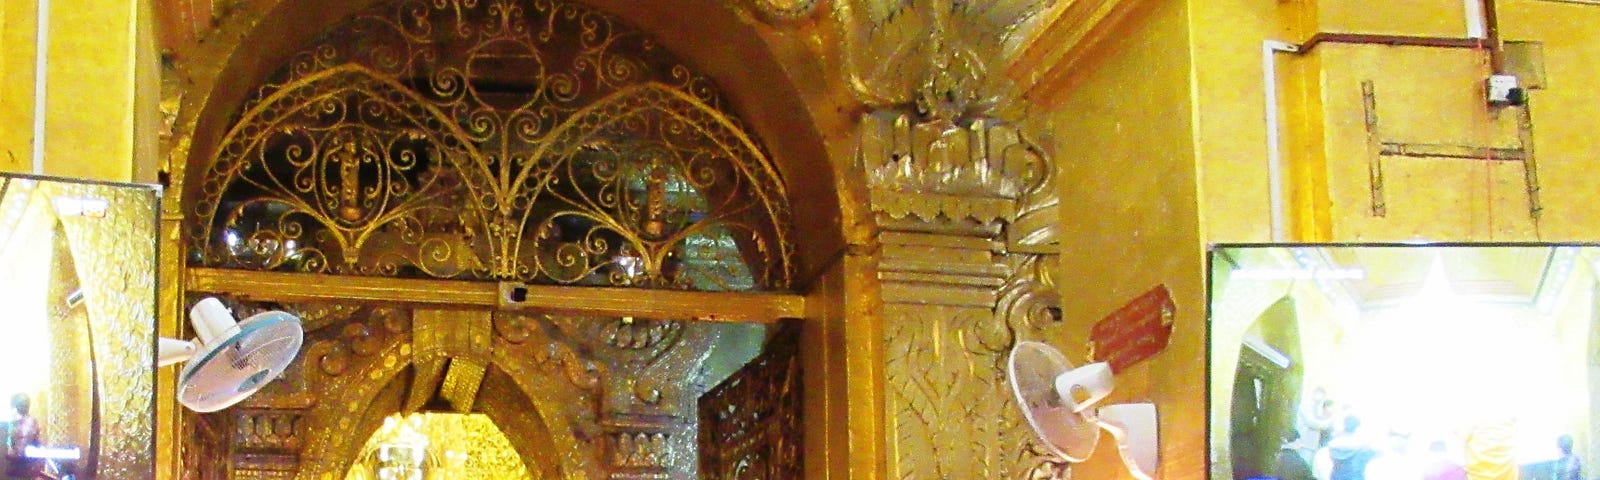 Mahamuni Buddha covered in gold leaf in Pagoda in Mandalay